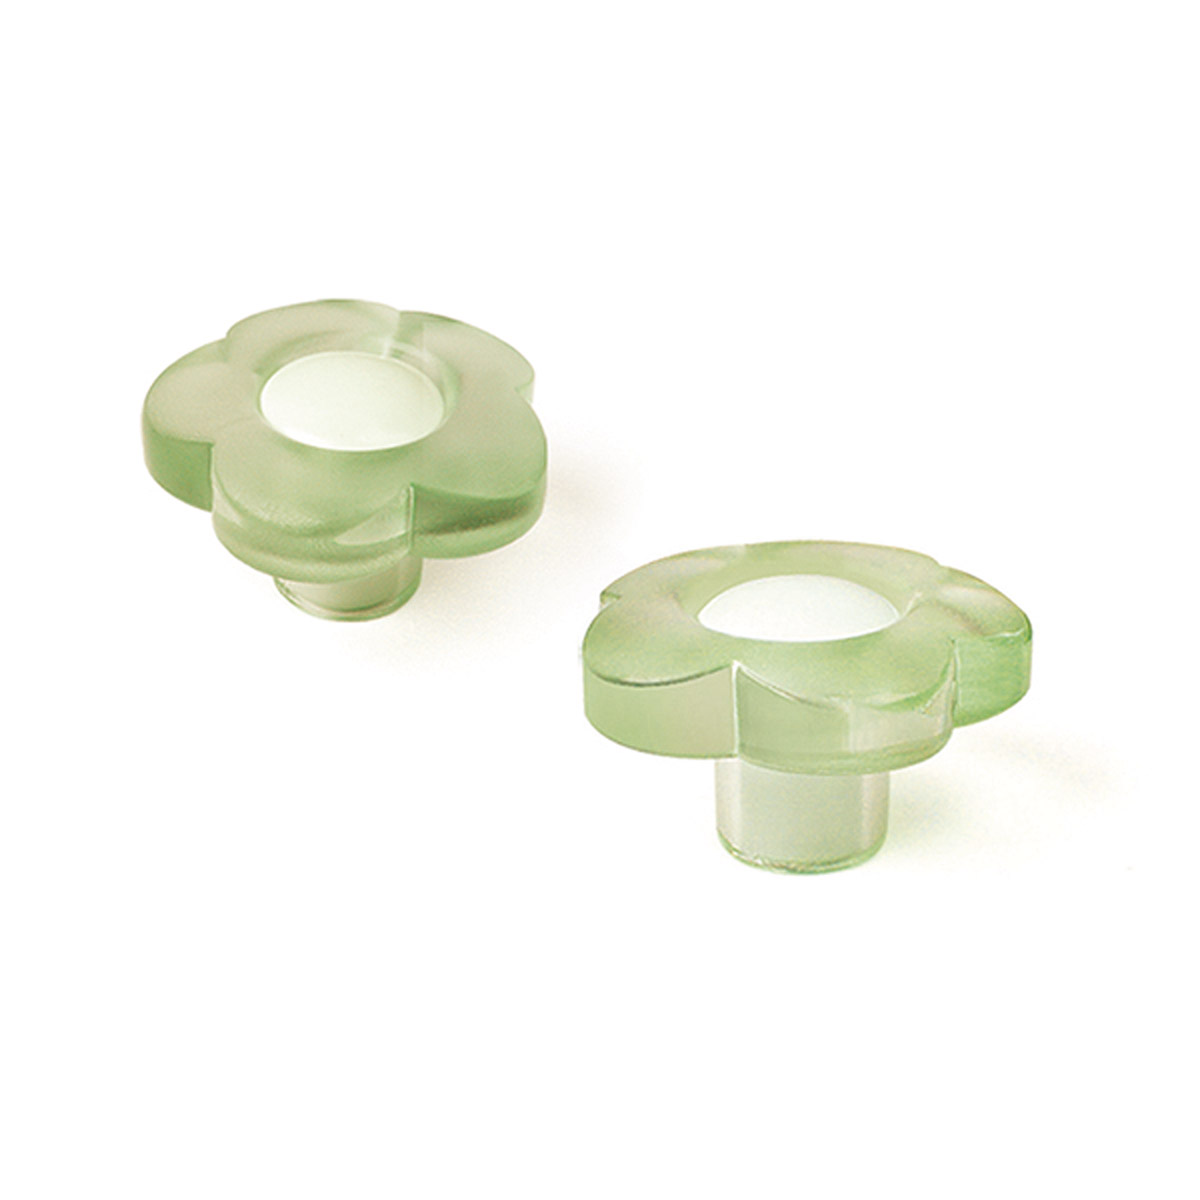 Pomo de plástico con acabado verde, dimensiones: 34x34x20mm Ø: 34mm